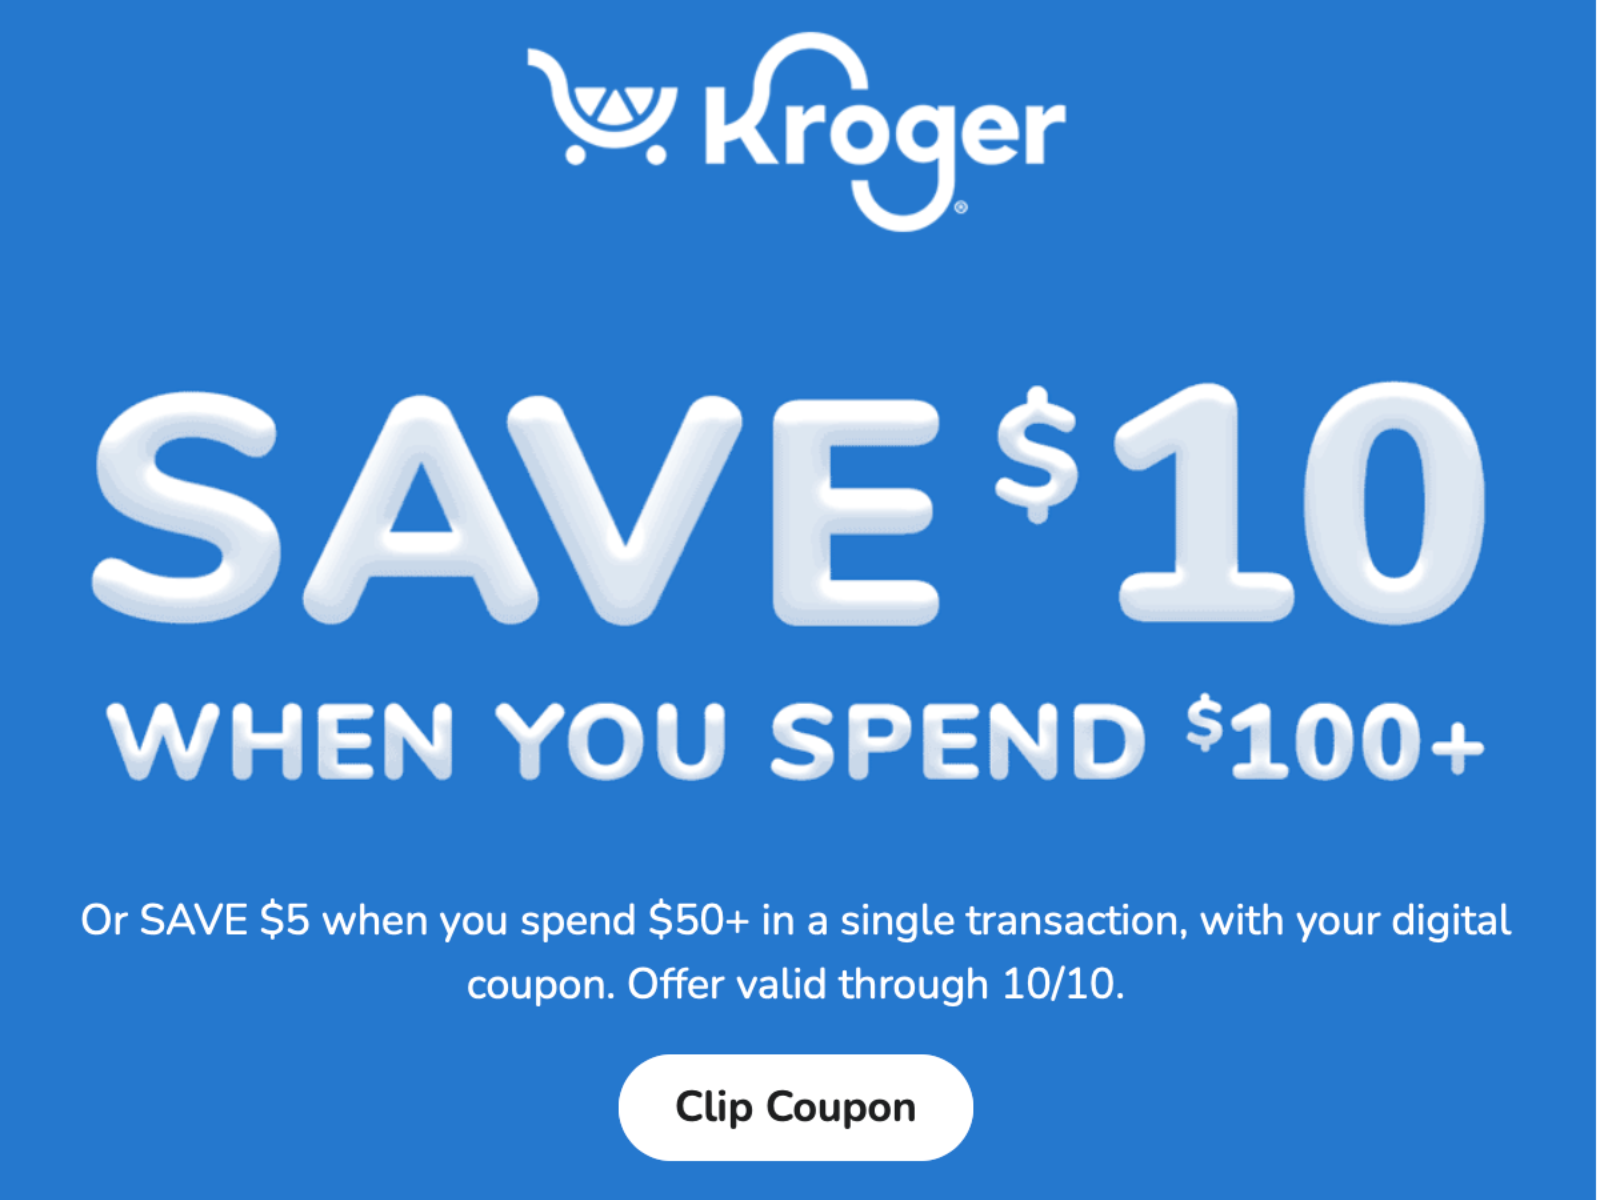 Hefty Slider Storage Bags Just $1.99 At Kroger - iHeartKroger